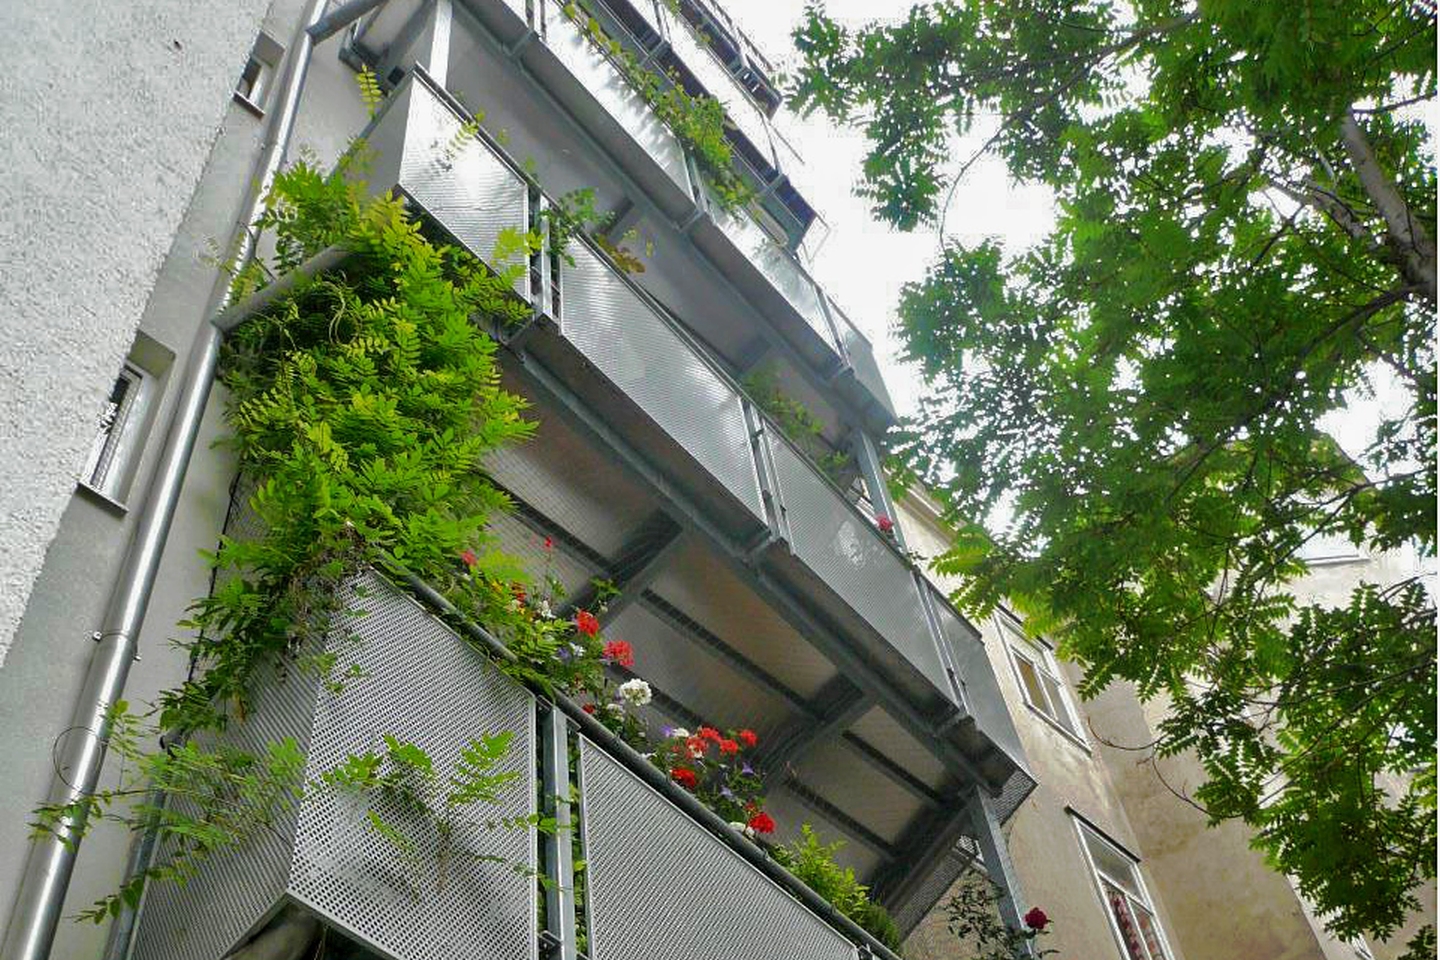 Hofseitige Balkonzubauten an einem Gründerzeithaus